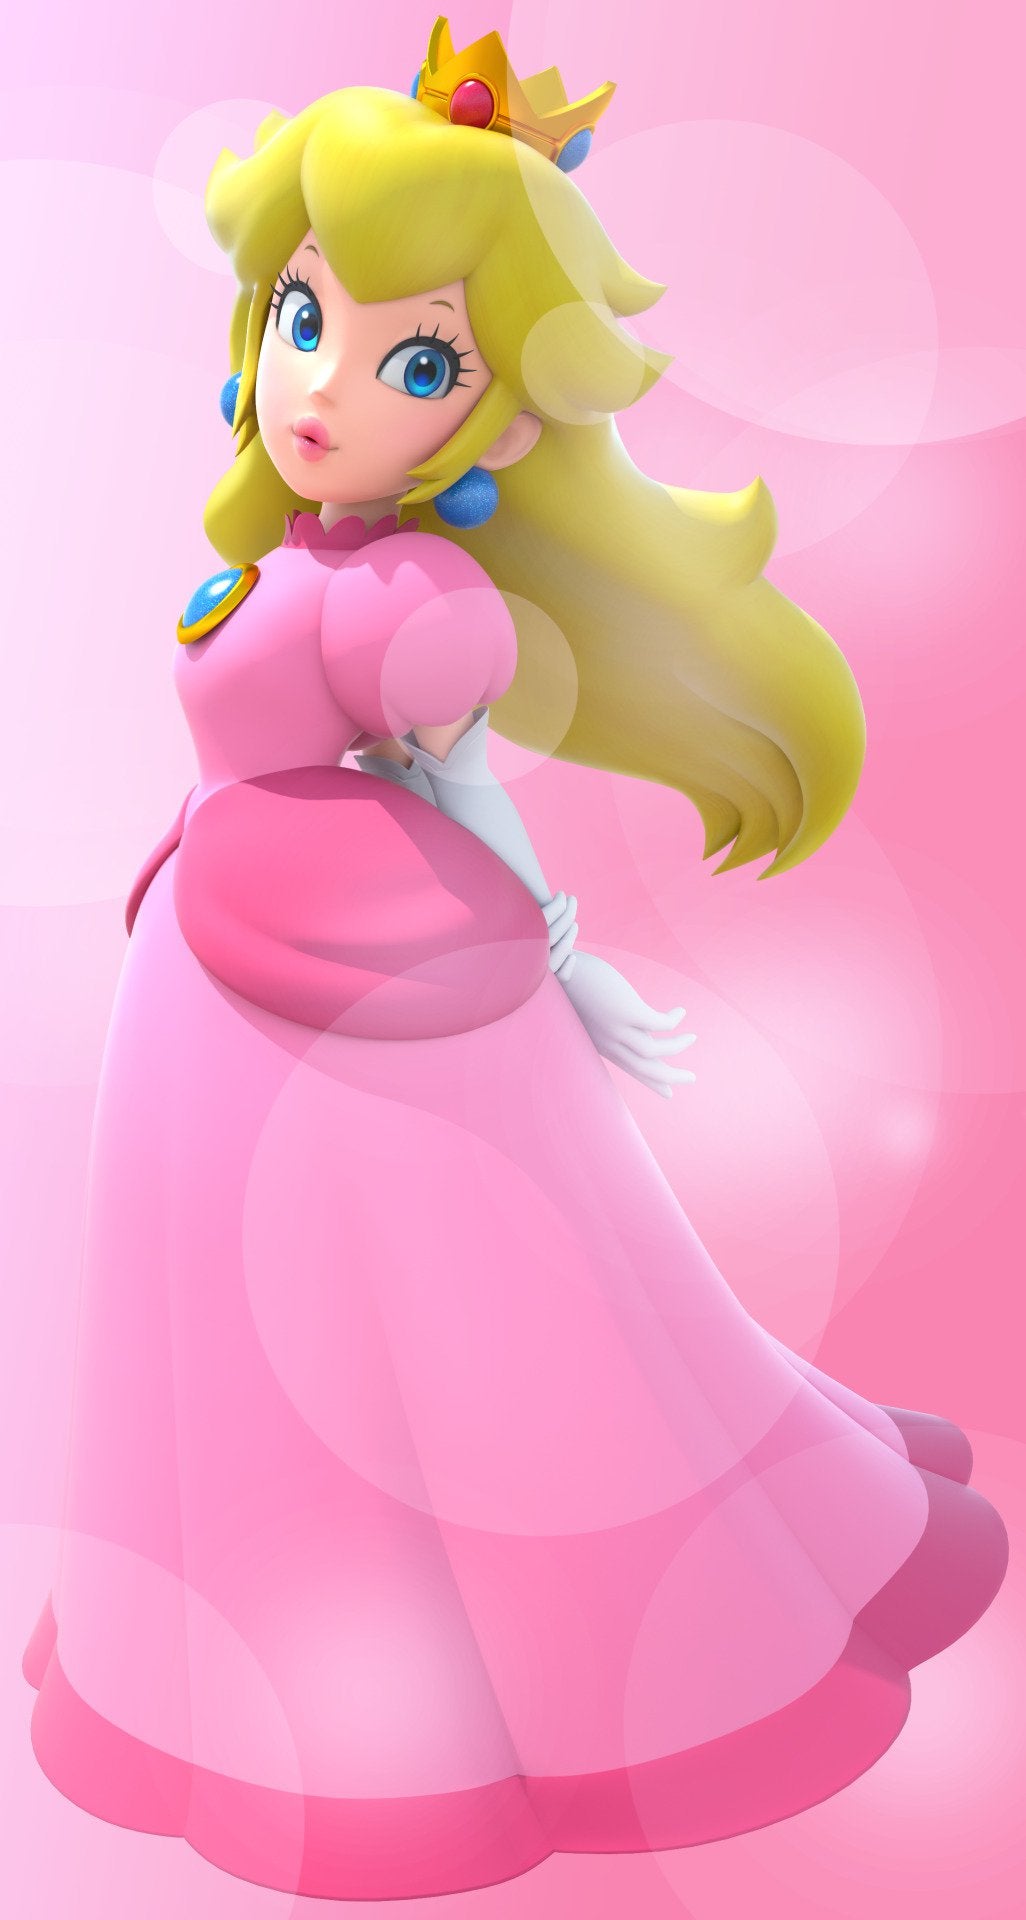 I remade Bowser's precious Princess Peach phone wallpaper (plus three other Mario princesses!)